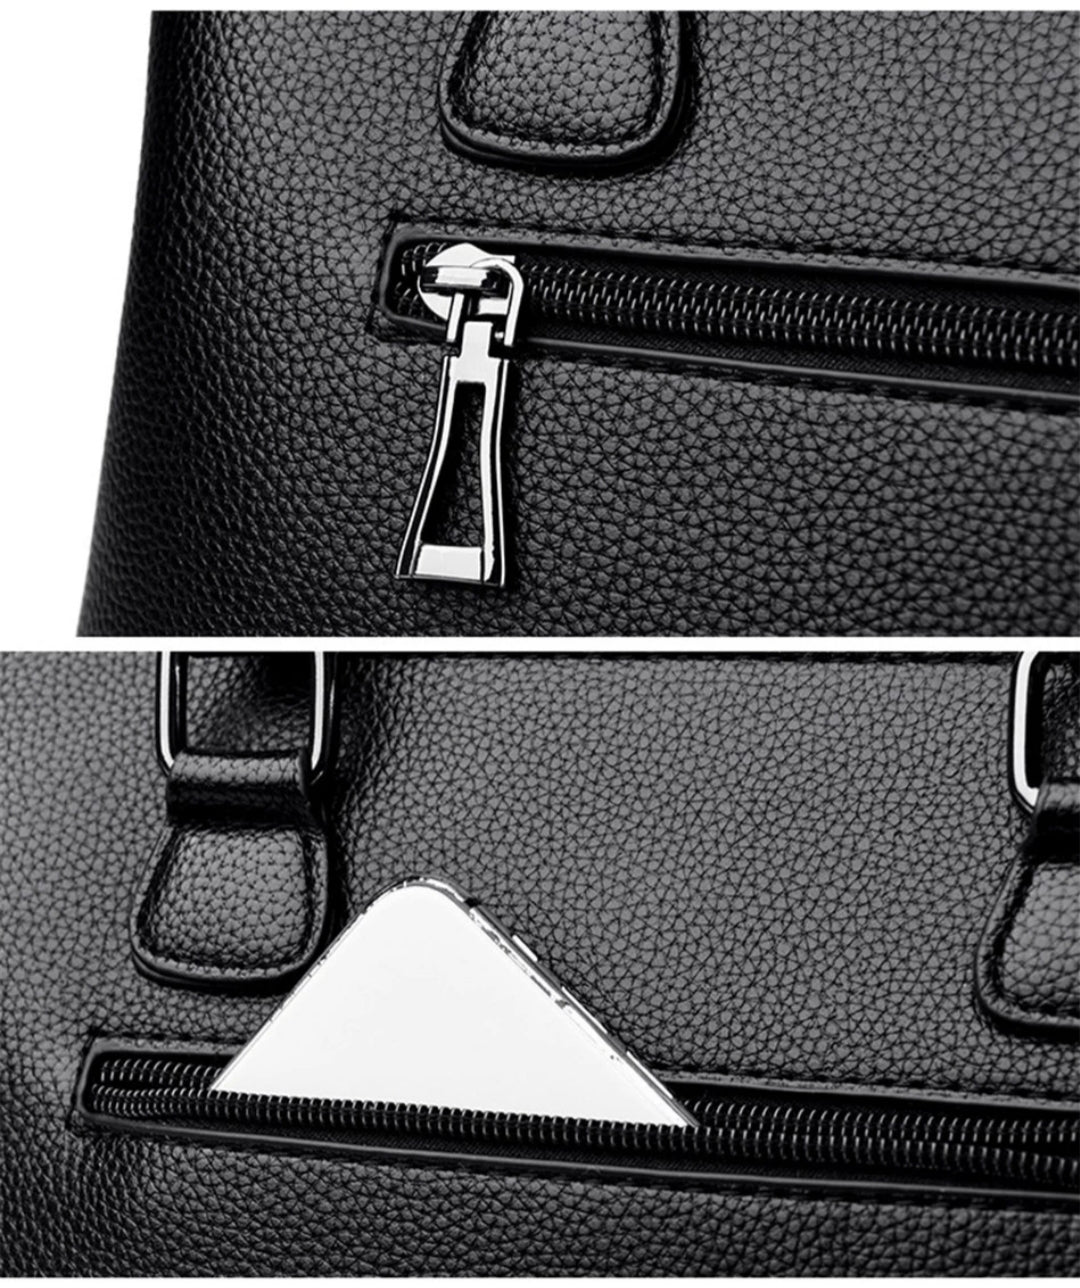 Girls Check Leather Handbags | Stylish & Functional | Makeup Bag 6910-5